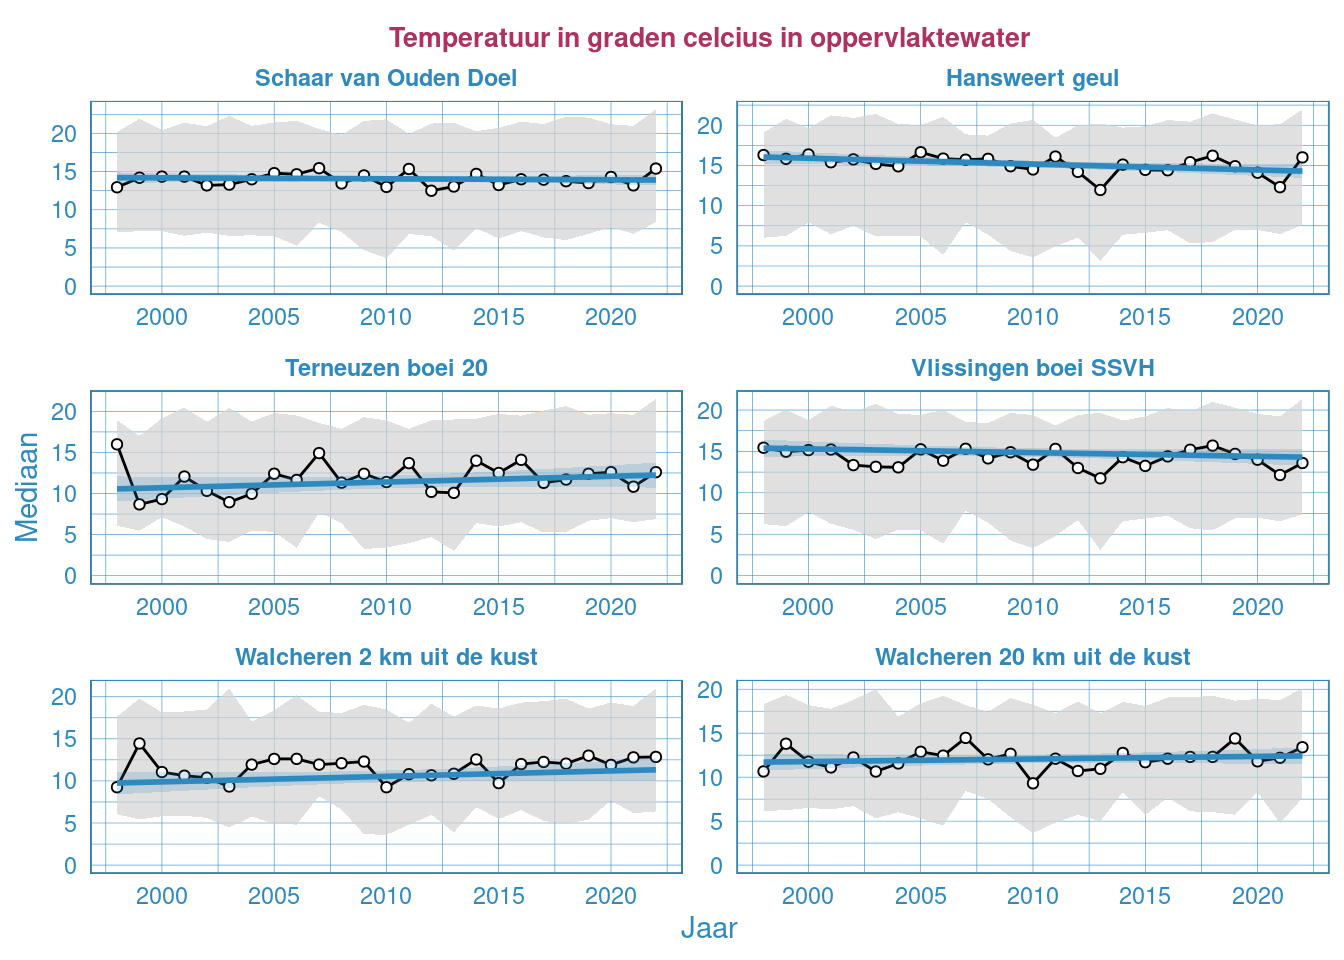 Jaarlijkse Resultaten voor temperatuur in de Westerschelde en in de monding vanaf 1998. In 2015 zijn er bij Walcheren alleen metingen gedaan tussen september en december, hierdoor zijn de waarden lager dan in andere jaren.